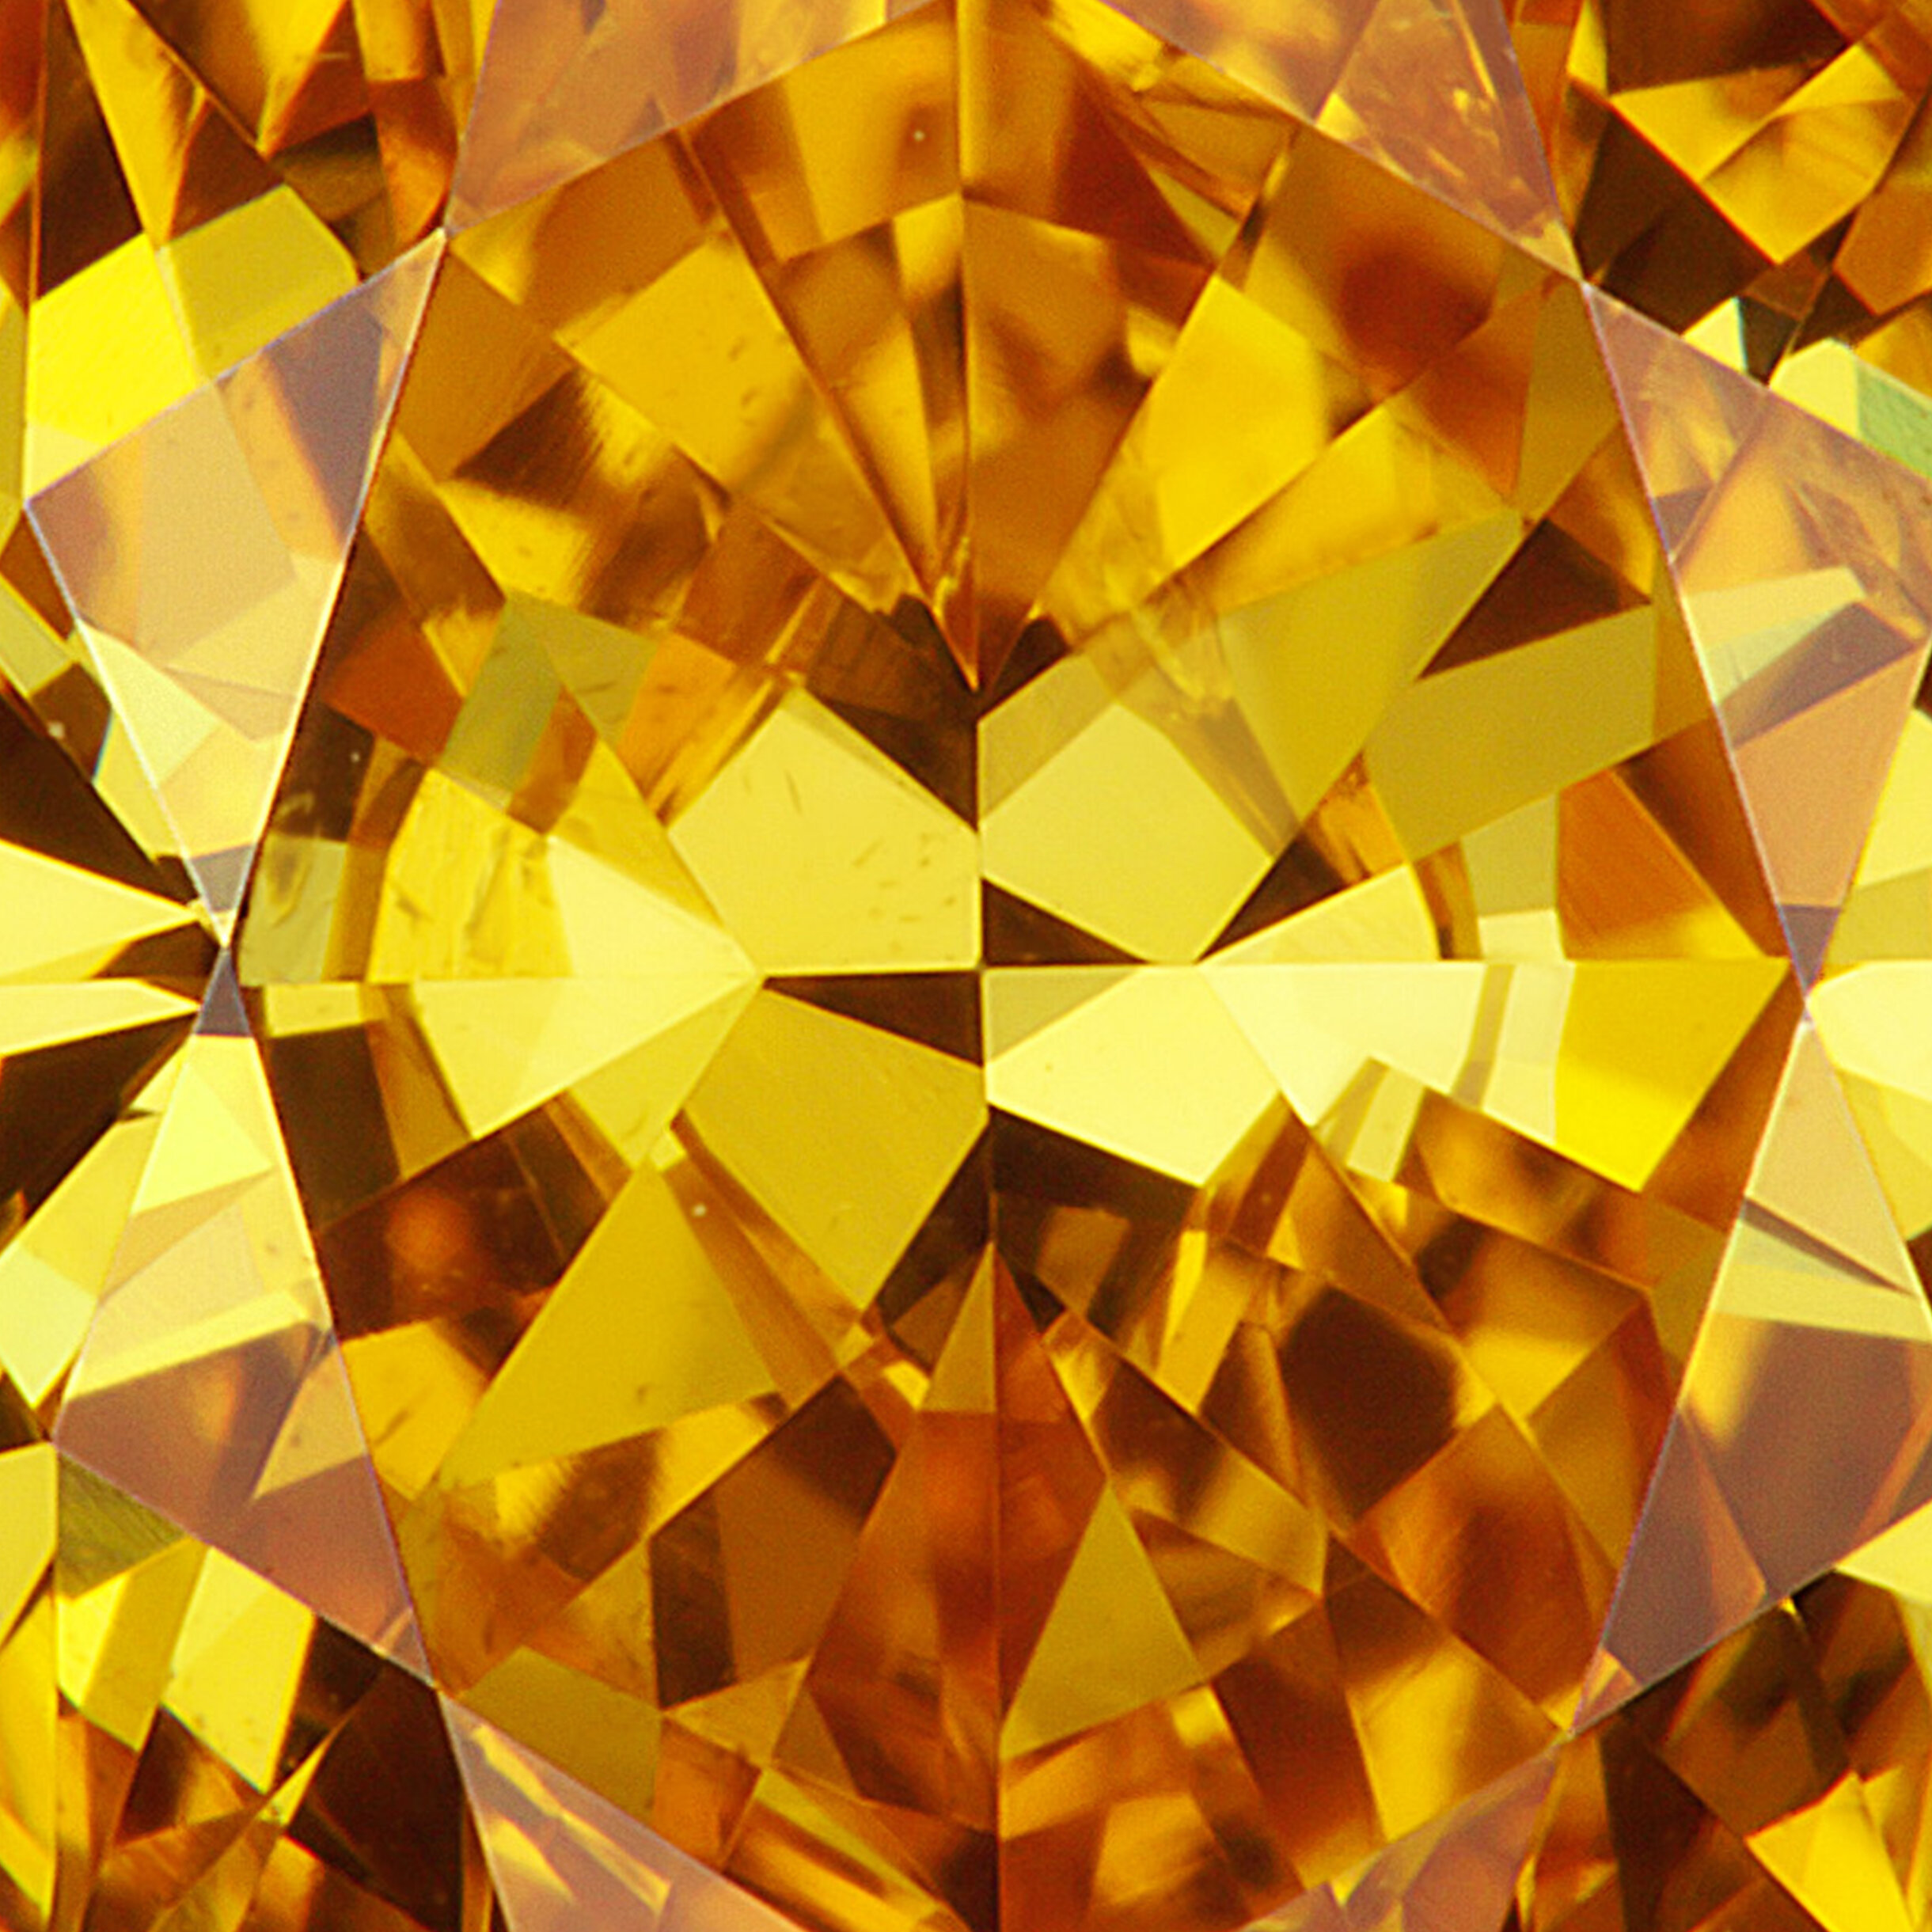 L.J. West Diamonds là một trong những thương hiệu trang sức danh tiếng nhất thế giới, với những sản phẩm kim cương đẳng cấp và sang trọng. Hãy chiêm ngưỡng hình ảnh liên quan để thưởng thức những trang sức tinh xảo và đắt giá của thương hiệu này.